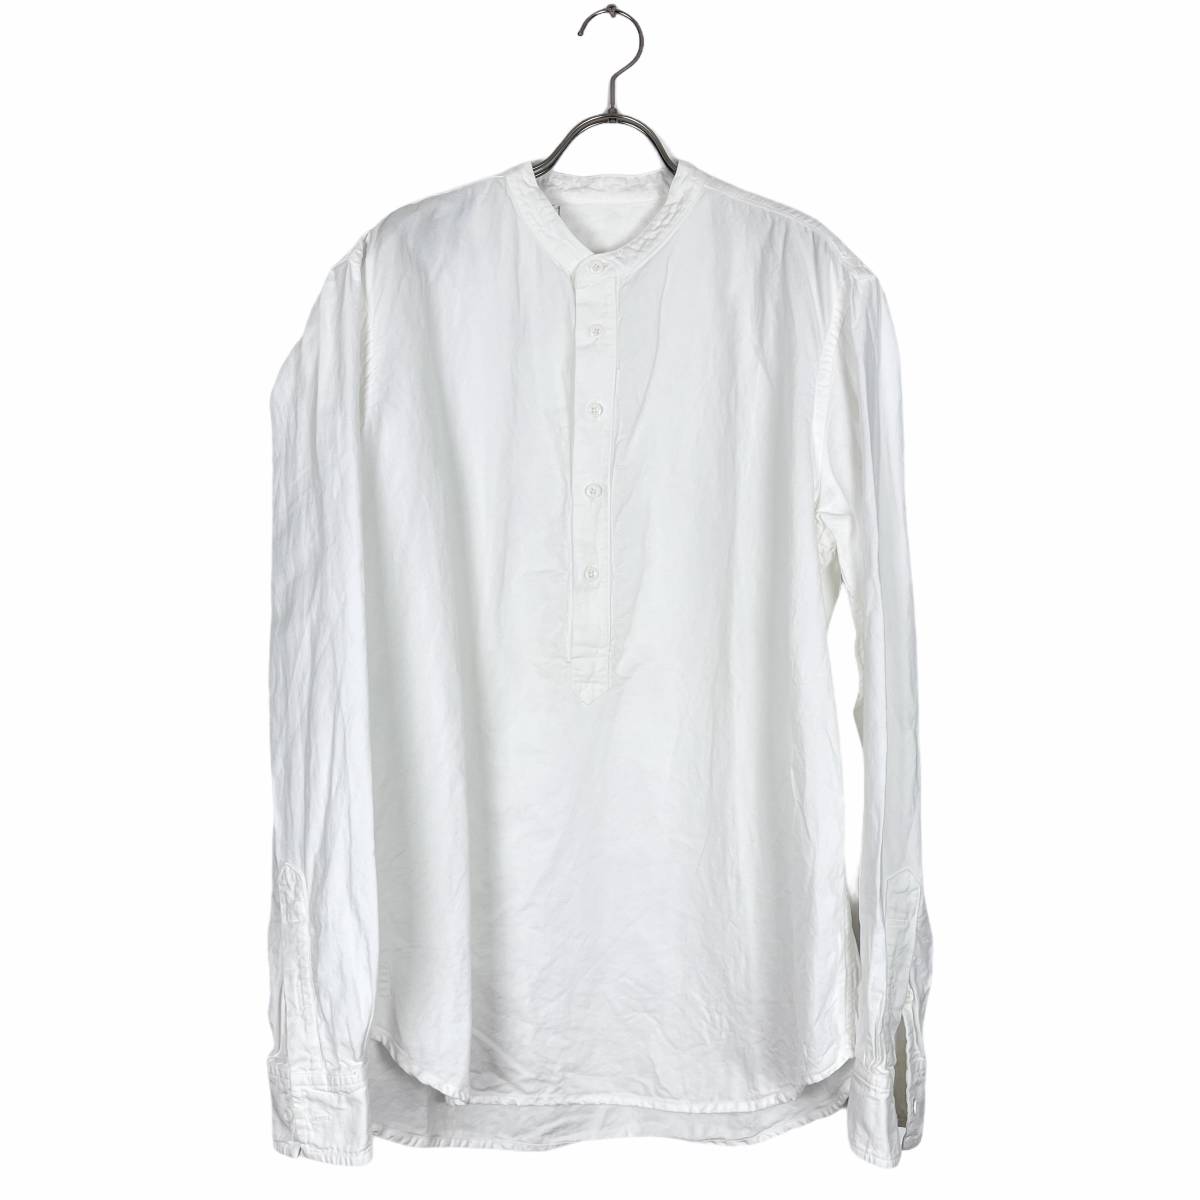 1.61(ワンポイントシックスティーワン) pull over shirts (white)